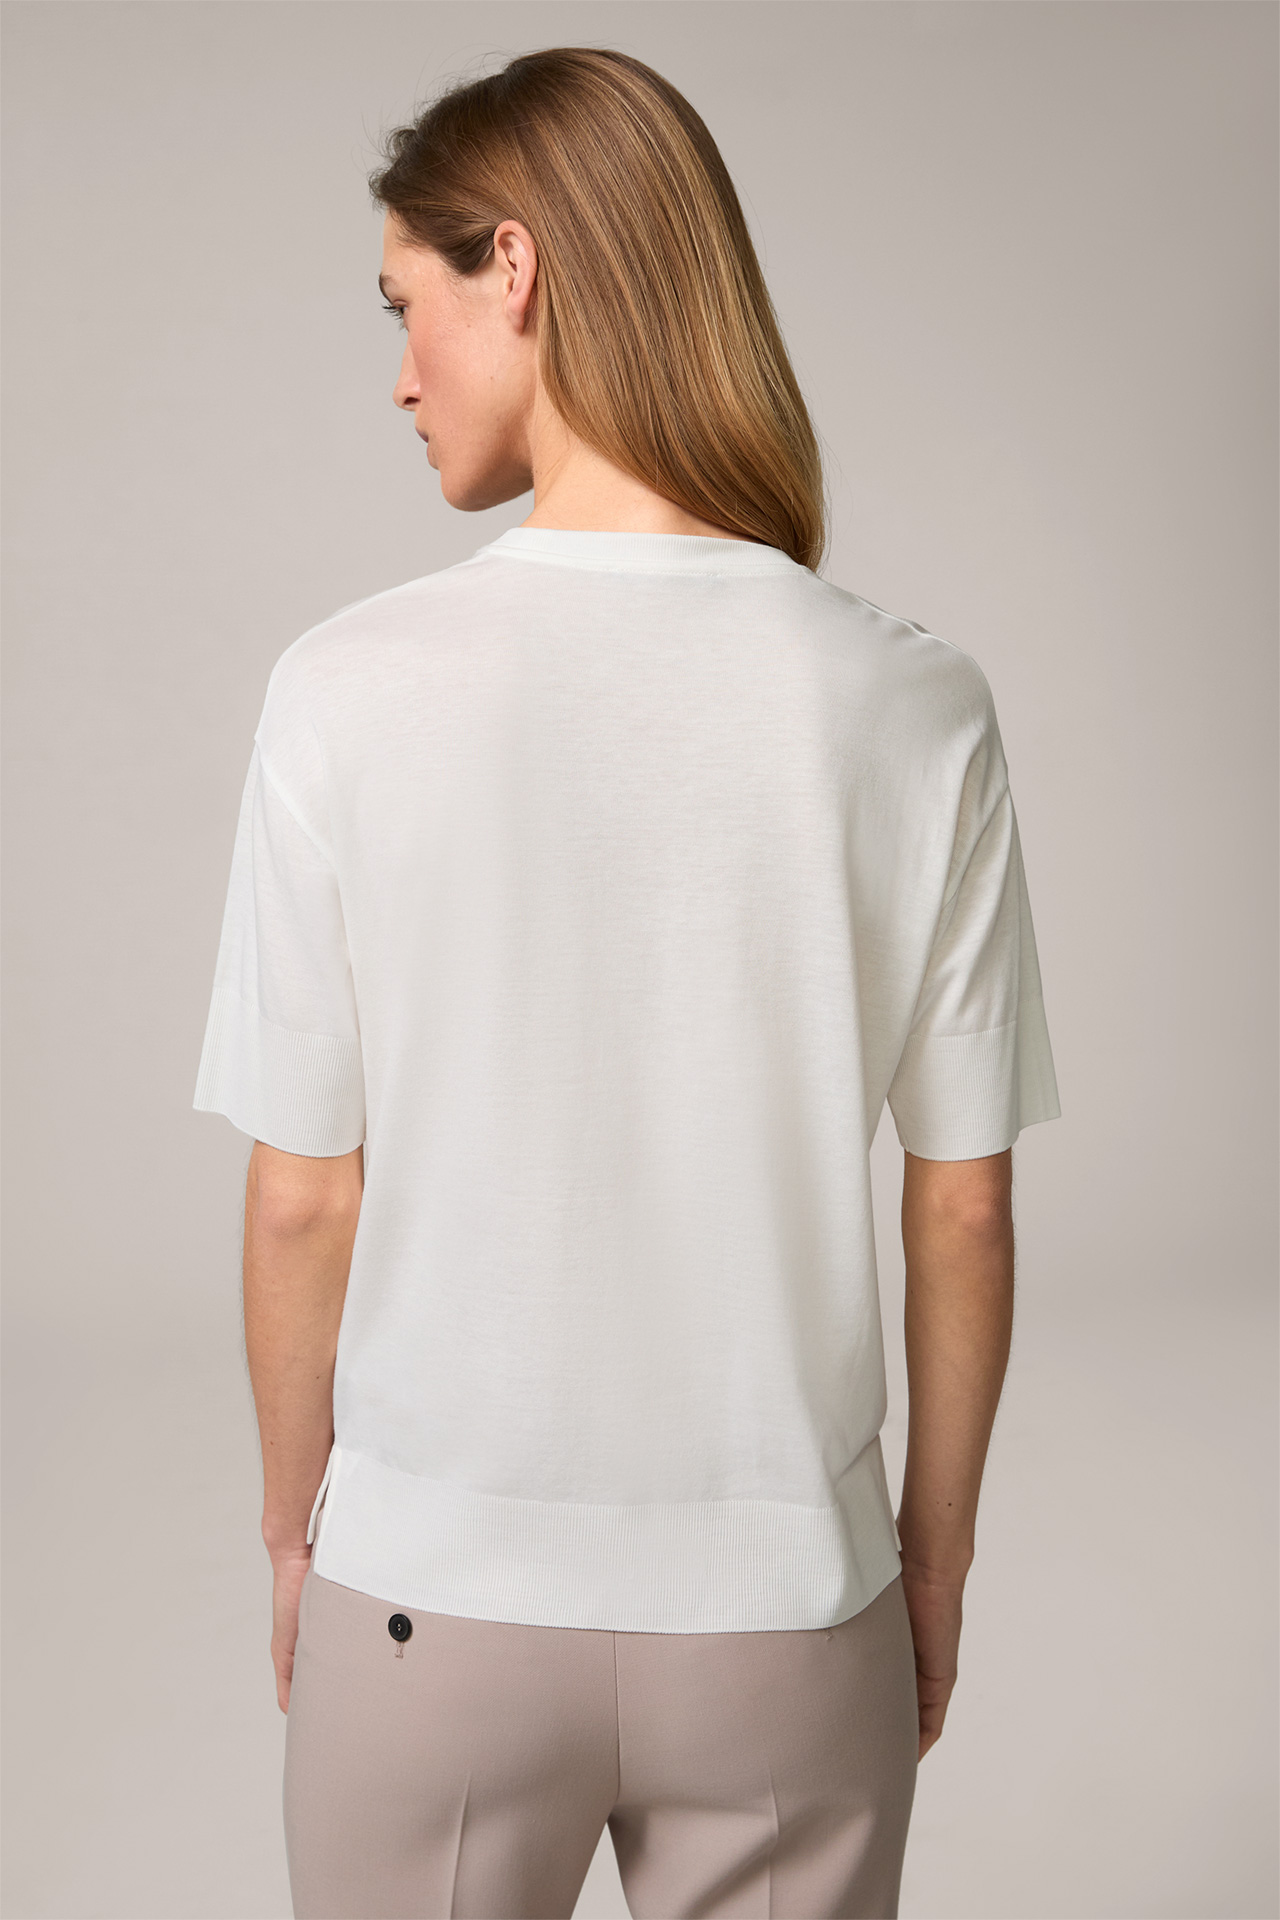  Tencel Cotton T-Shirt in Ecru